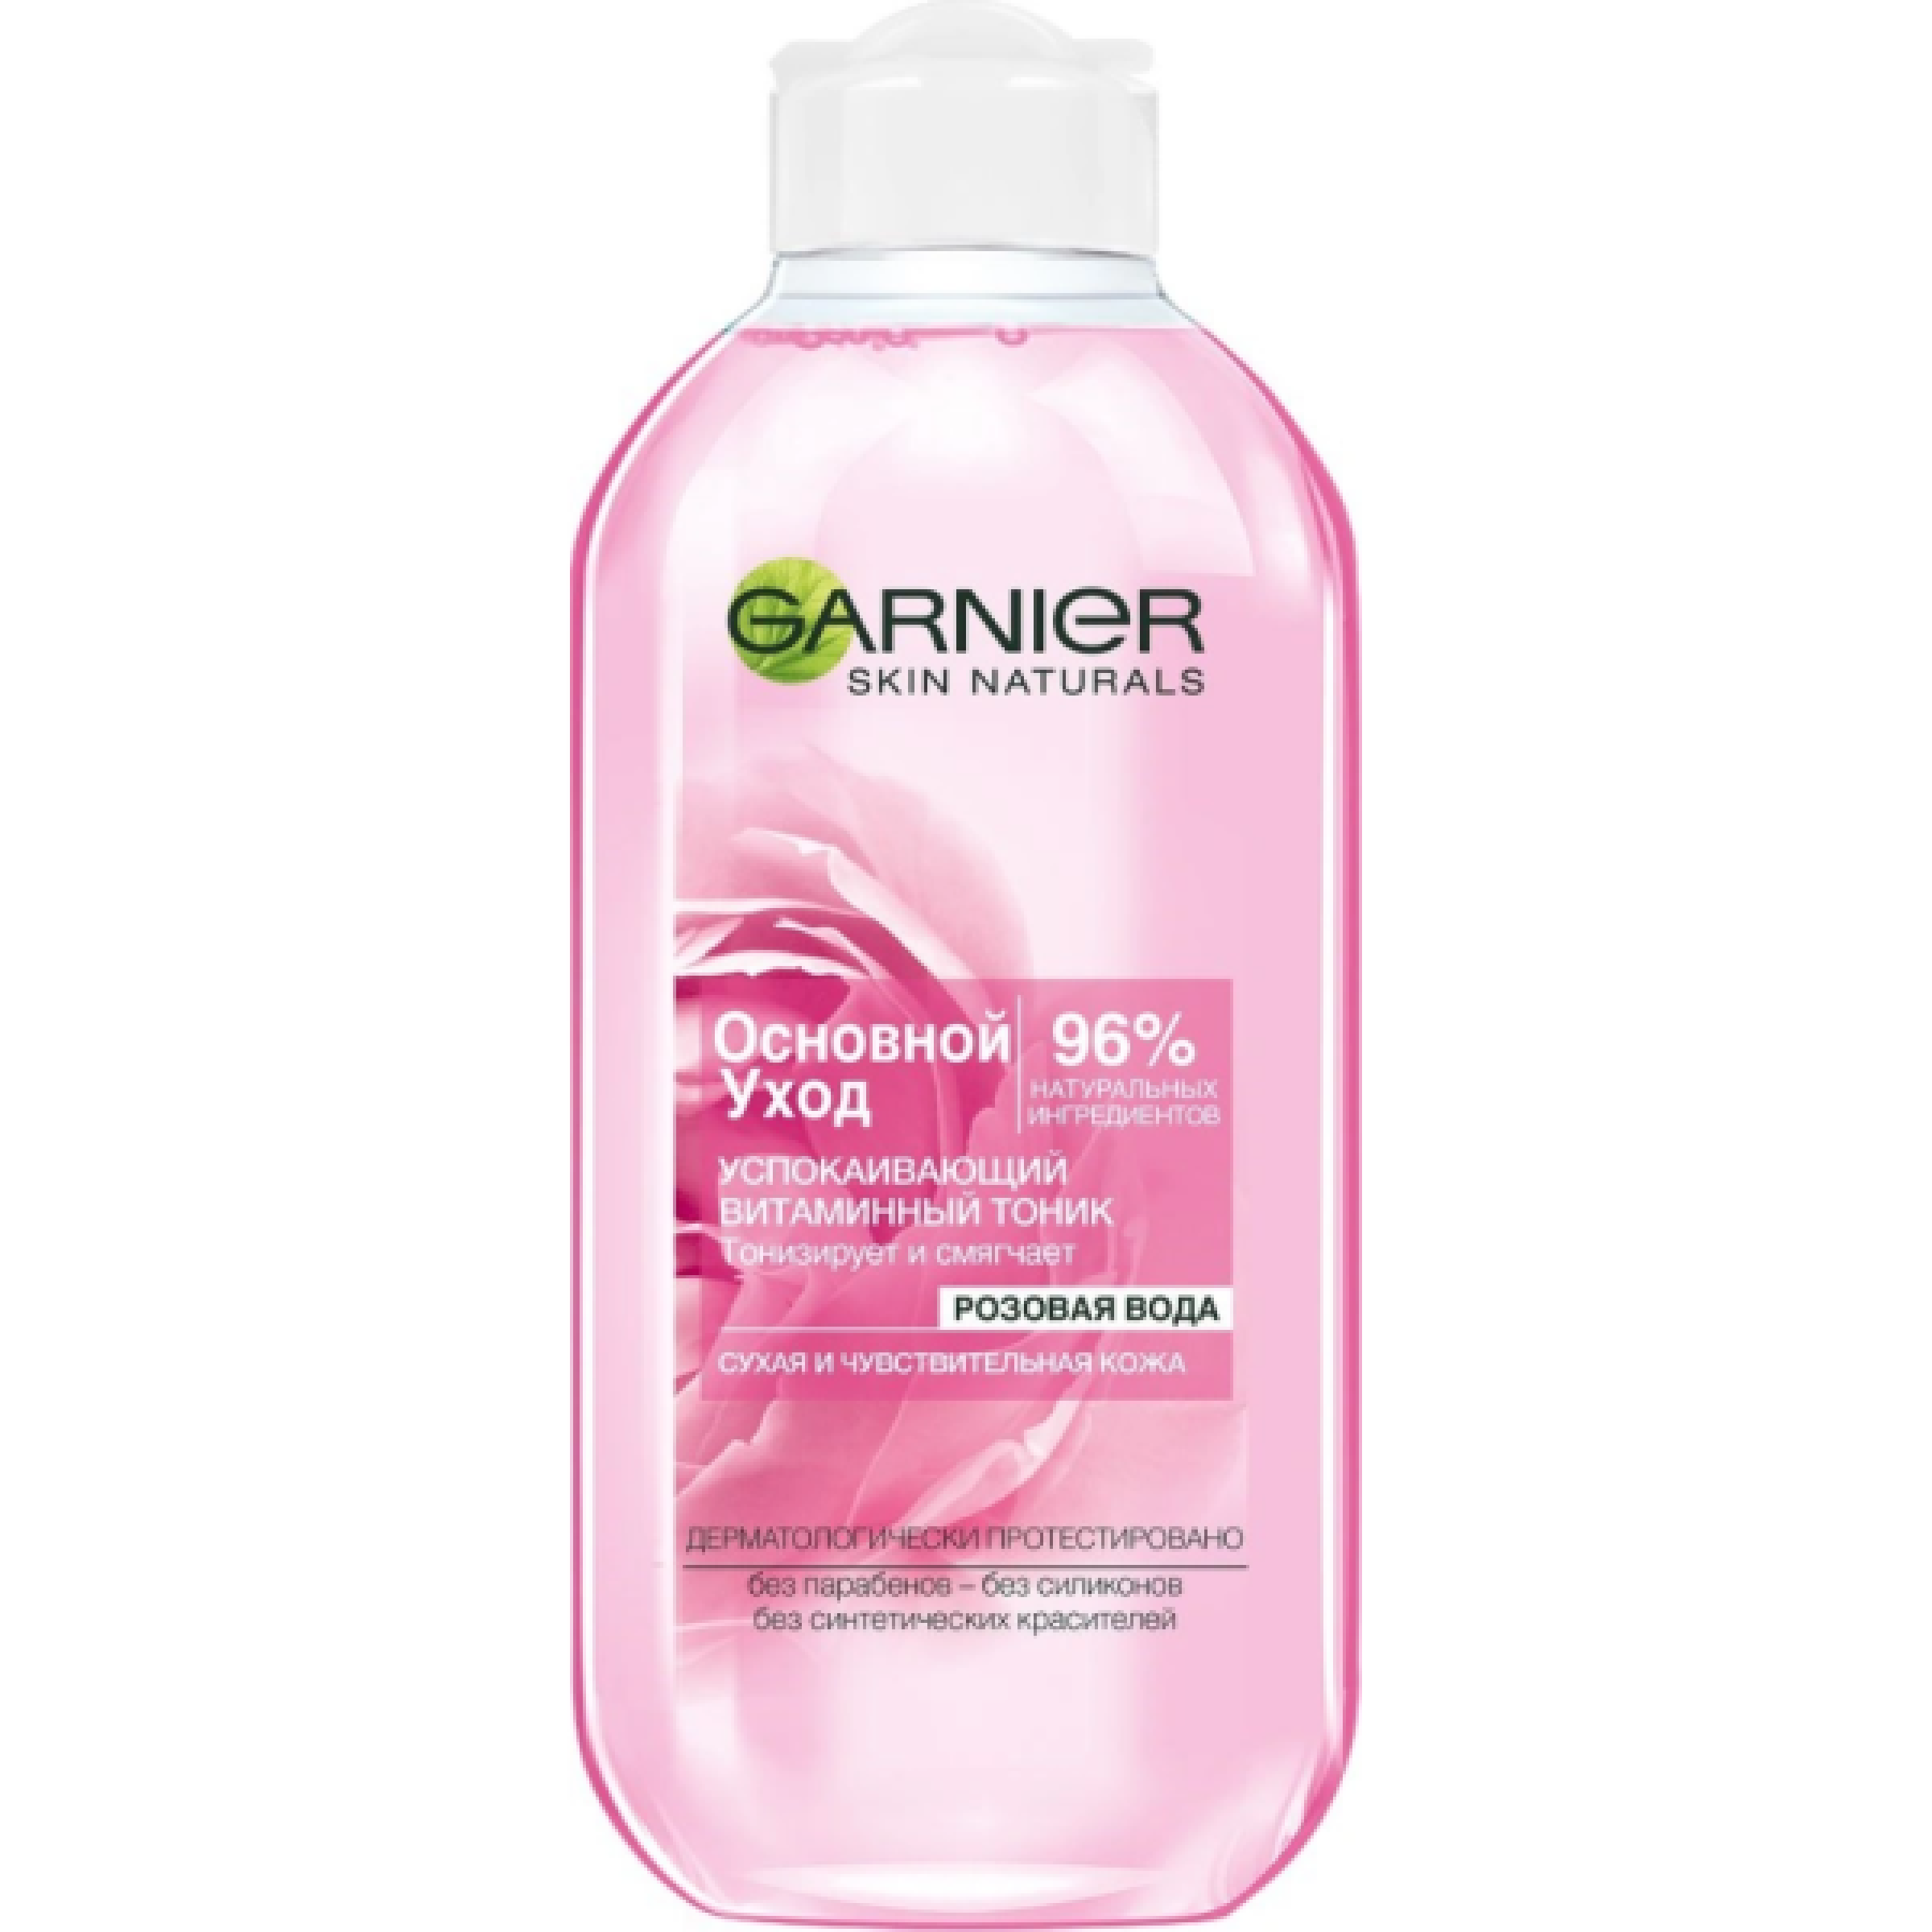 Успокаивающий витаминный тоник для лица Garnier  Основной уход, Розовая вода, для сухой и чувствительной кожи, 200 мл